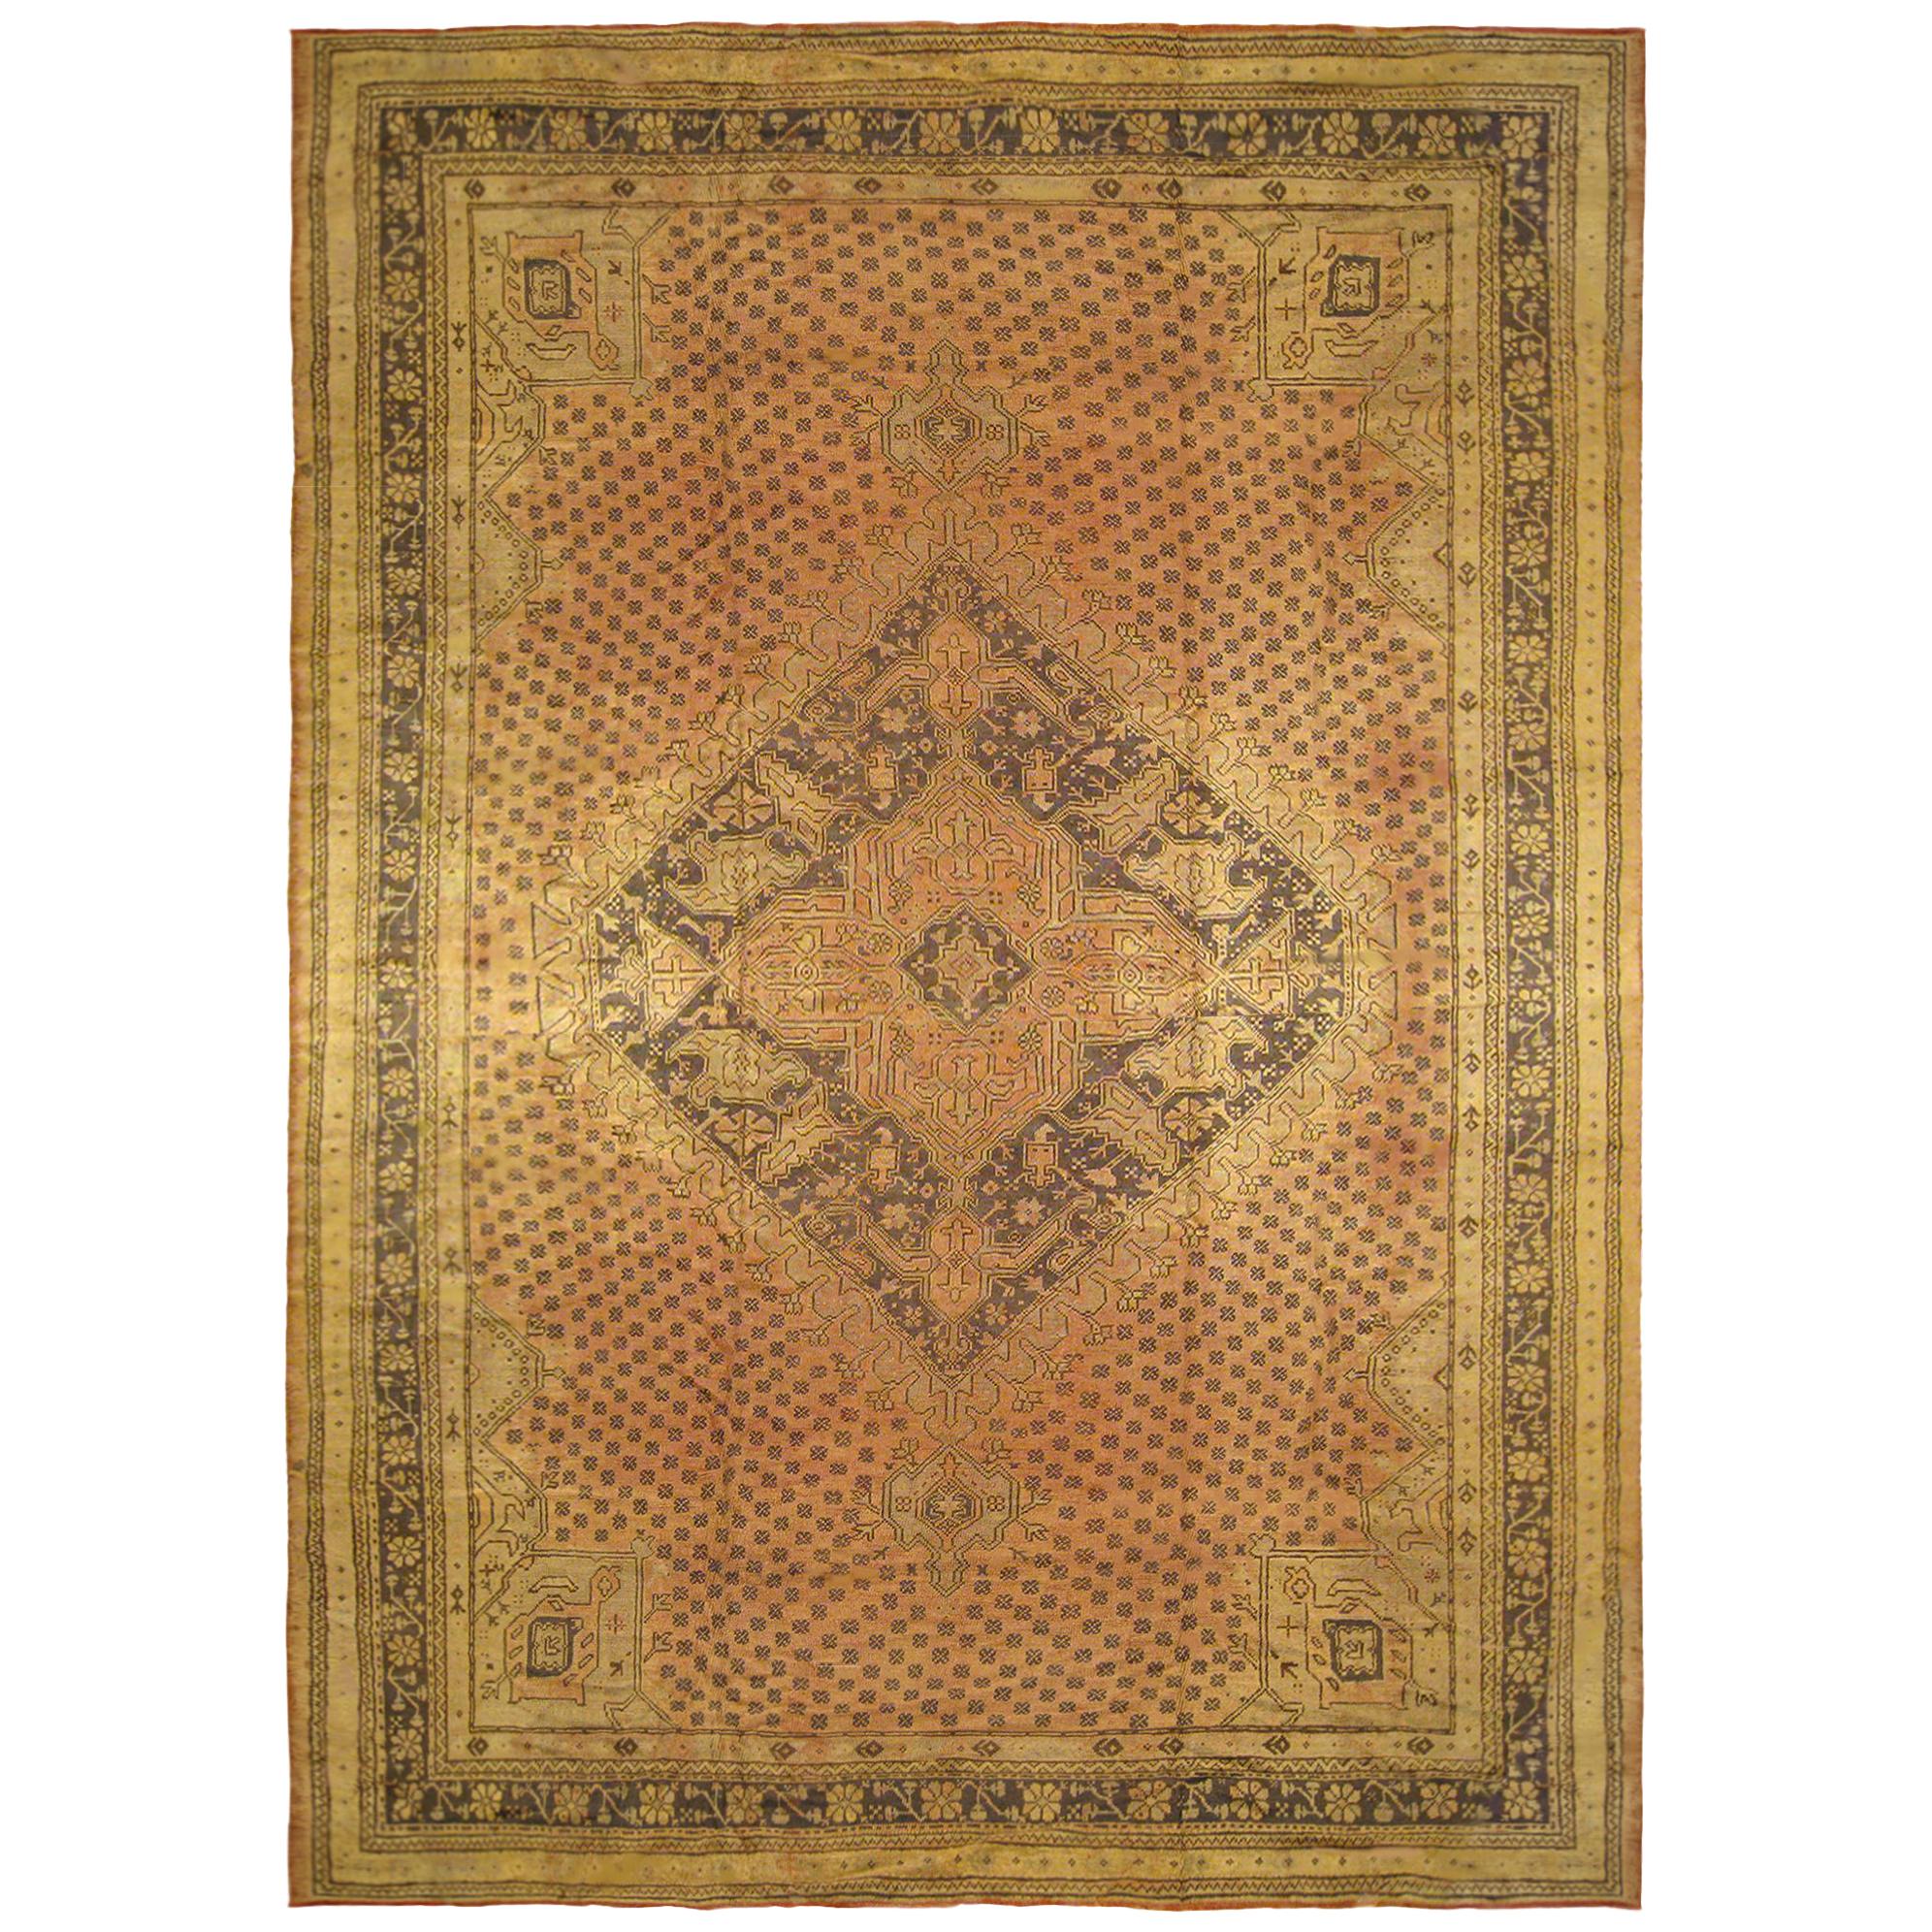 Türkischer Oushak-Teppich im Vintage-Stil, großformatig, mit Erdtönen im abgedeckten Feld